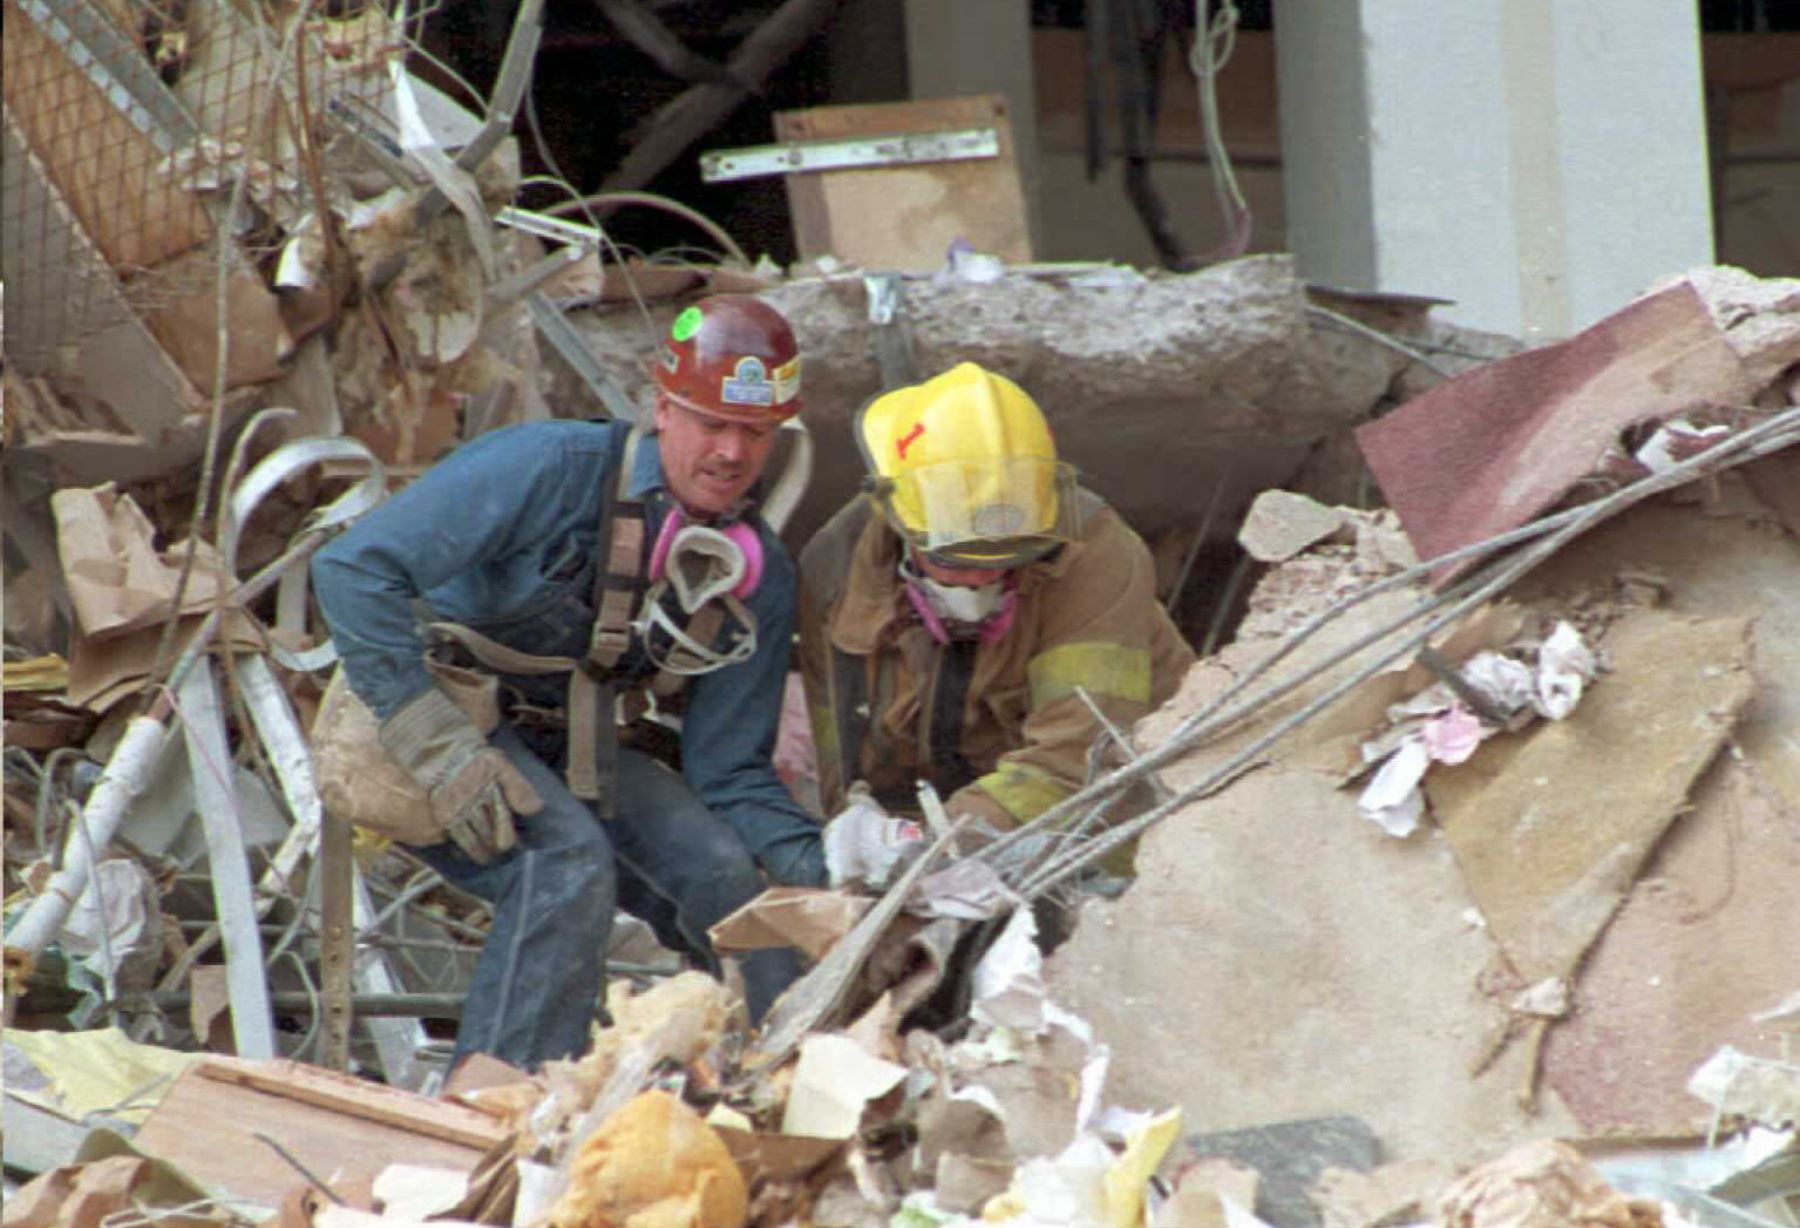 Se cumplen 25 años del segundo mayor ataque terrorista en Estados Unidos después del atentado del 11 de septiembre. En 1995 un camión con más de 2000 kilos de explosivos fue detonado frente al Edificio Federal Alfred Murrah en Oklahoma City, matando a 168 personas (entre ellos 19 niños menores de 6 años) y causando más 680 heridos.  Foto: AFP